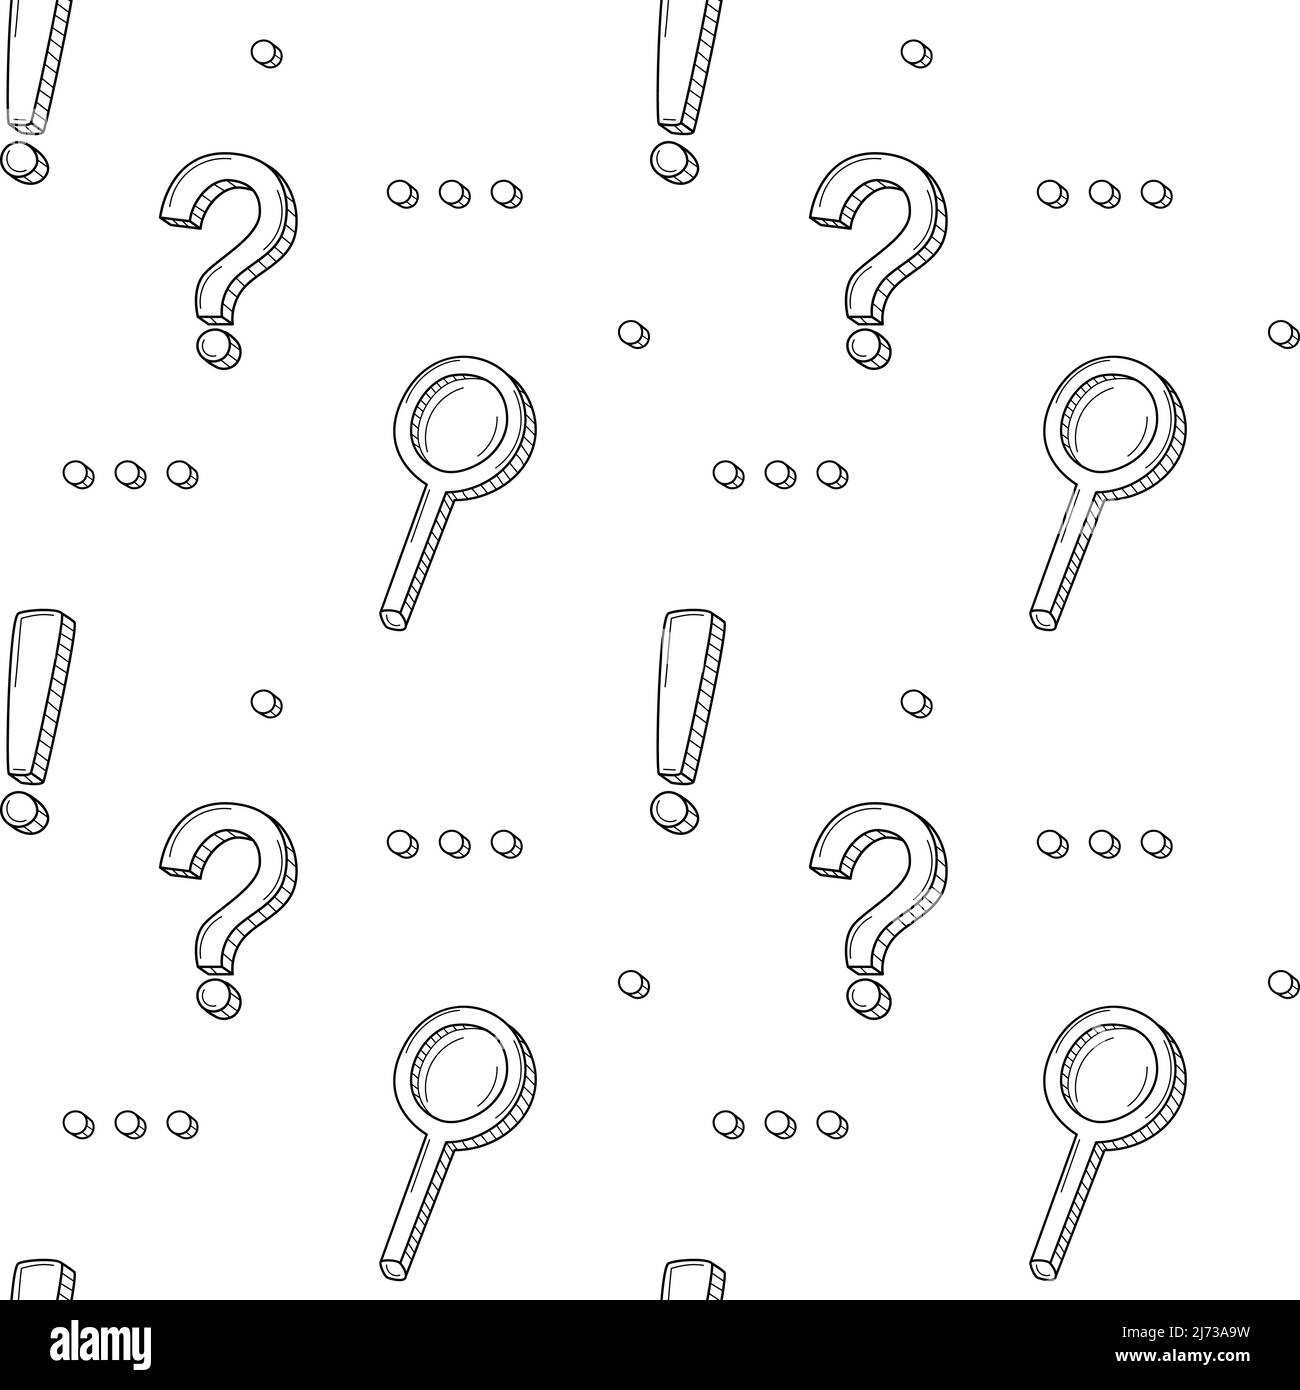 Ein einfaches, nahtloses Schulmuster mit Satzzeichen, Ausrufezeichen, Fragezeichen, Ellipsen, Lupe. Schwarz-weißer Hintergrund mit Isol Stock Vektor